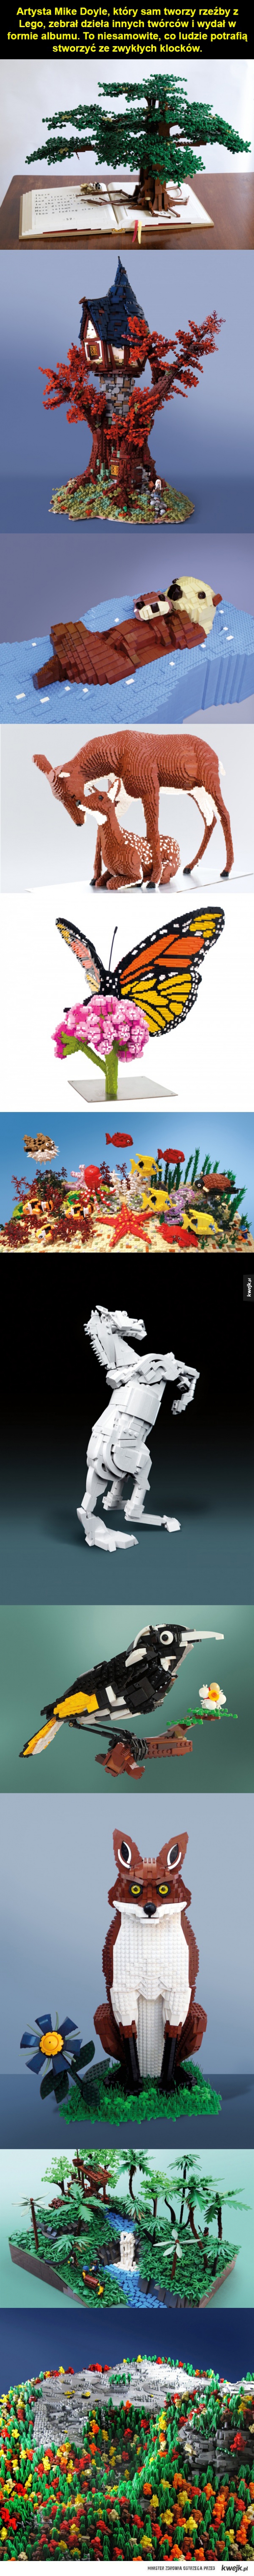 Rzeźby z Lego